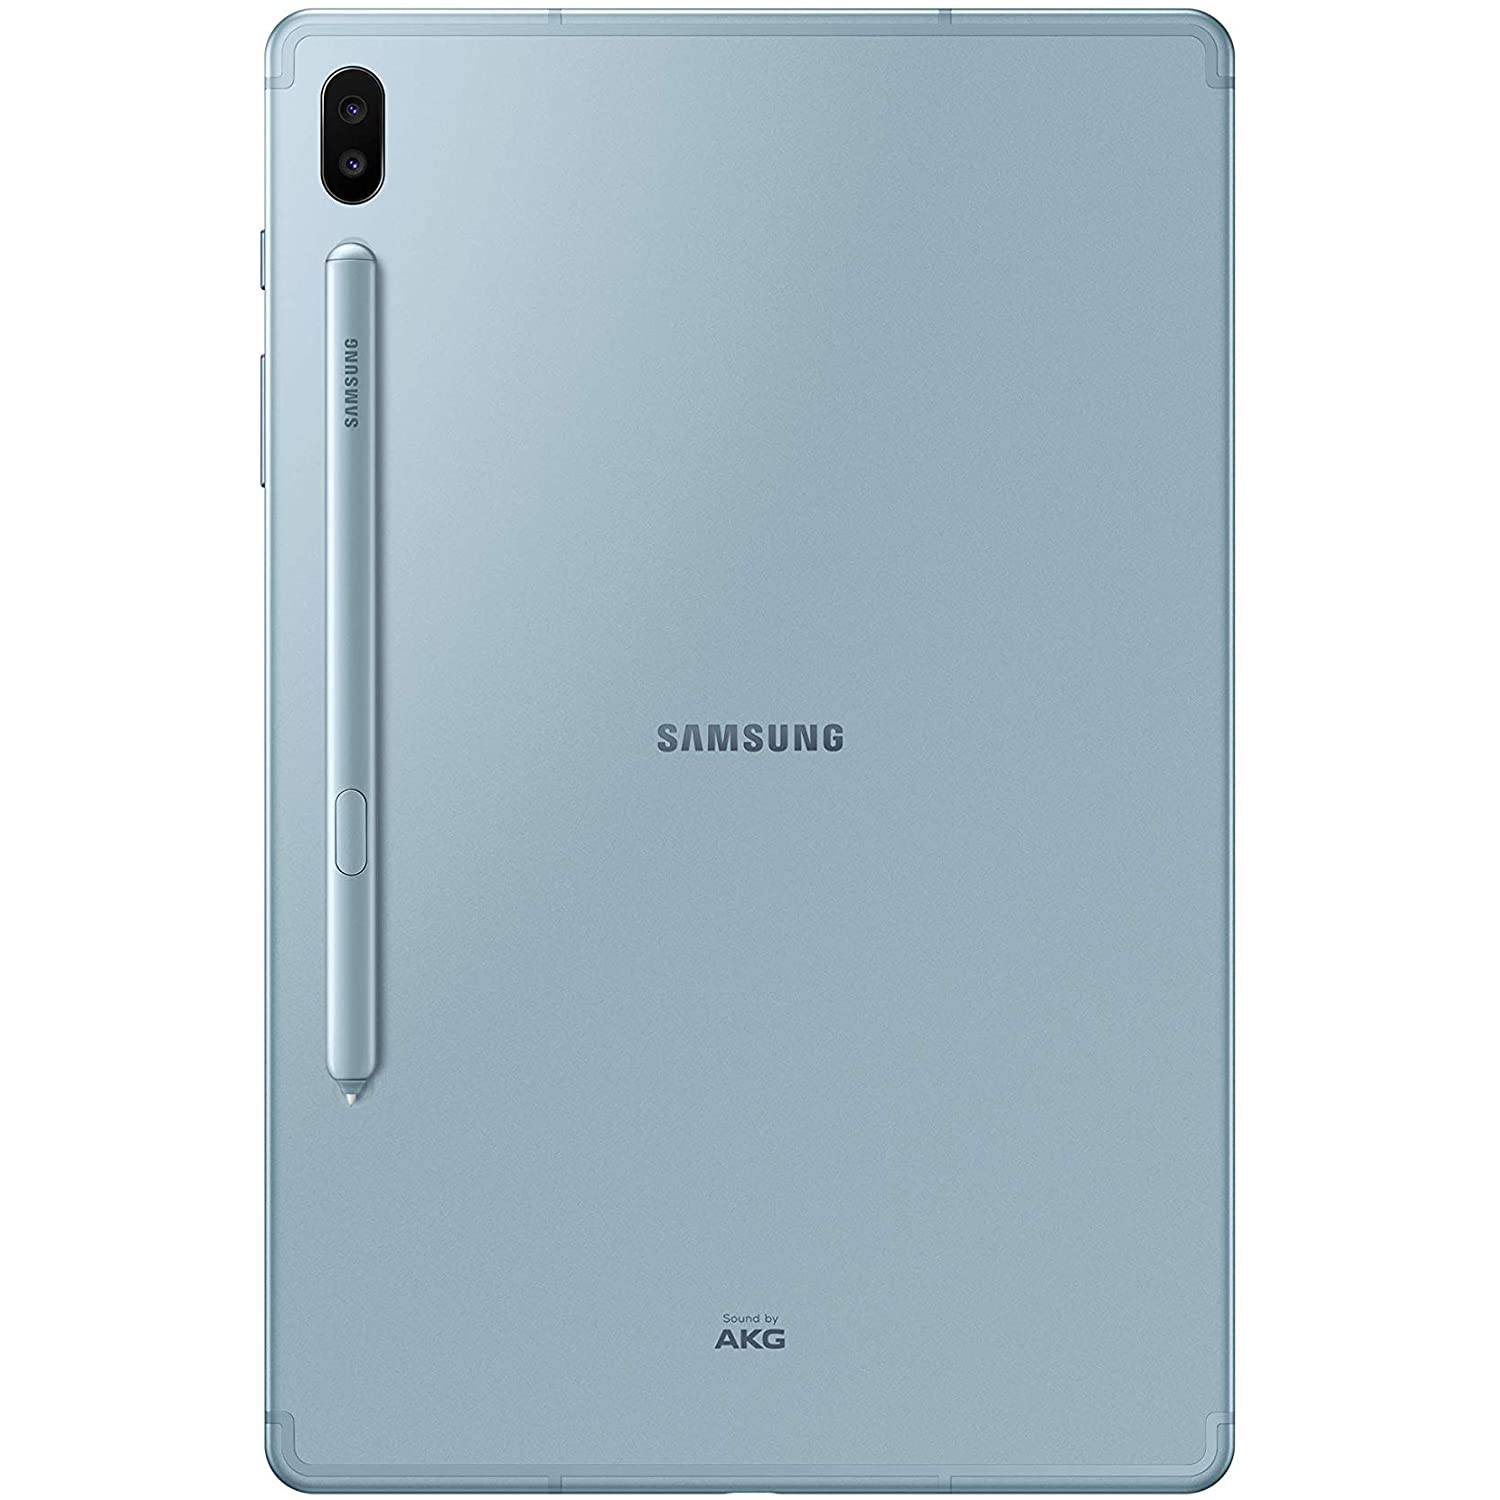 Samsung Galaxy Tab S6 (6GB RAM, 128GB )